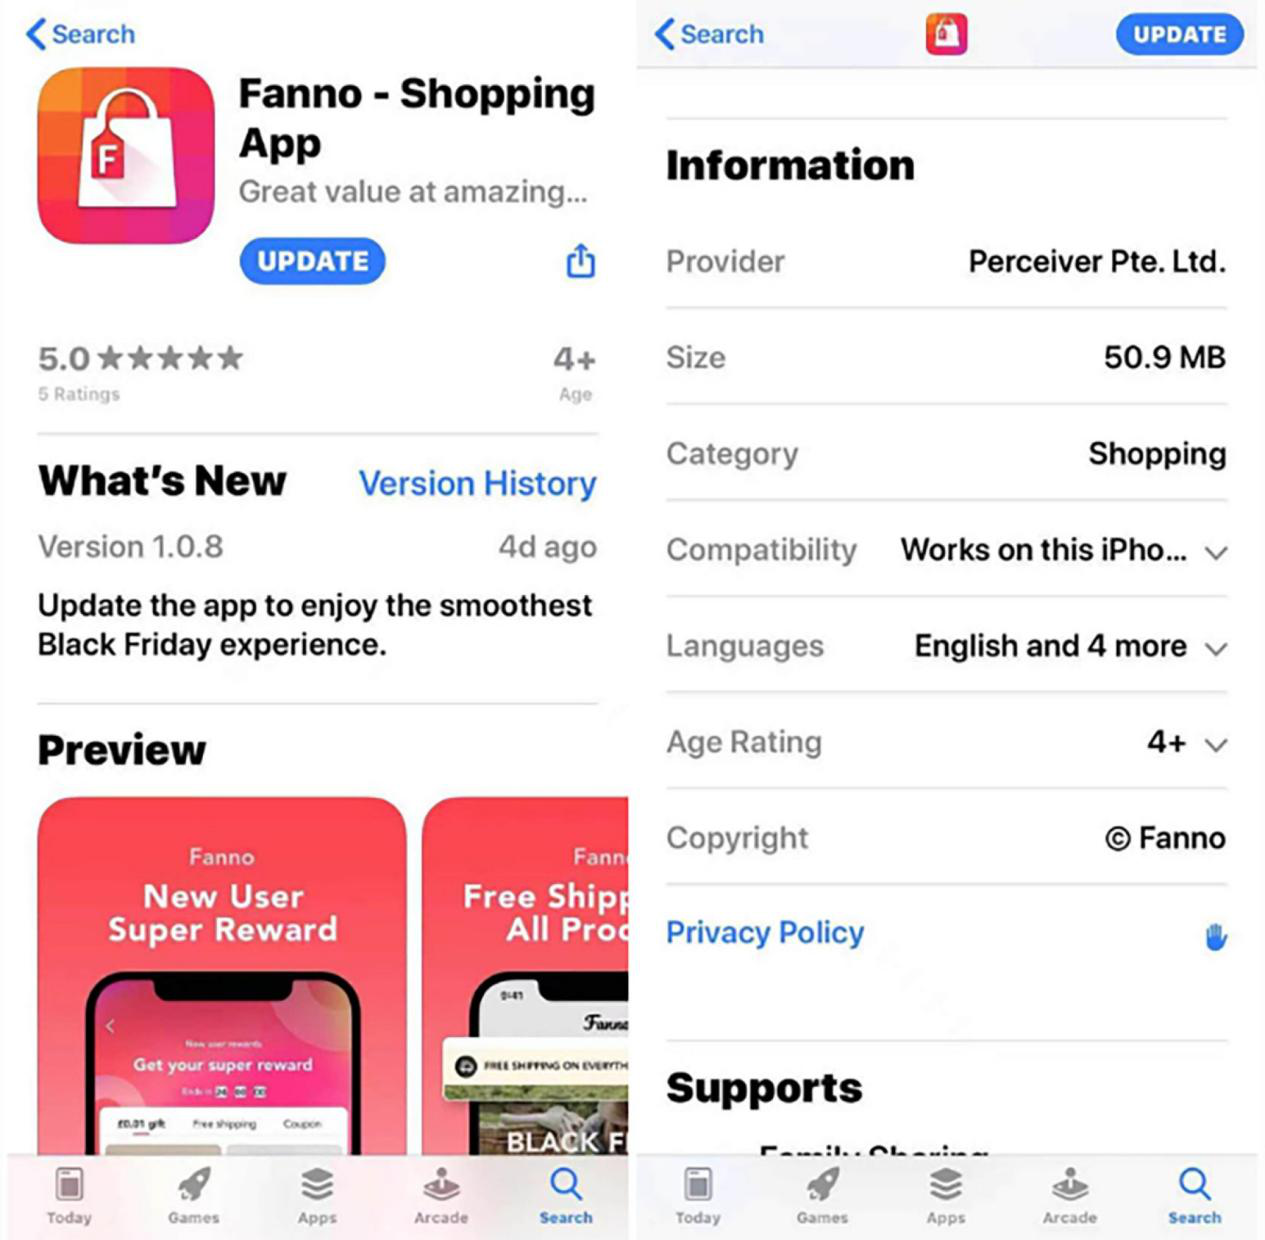 字节跳动加速布局海外市场 推出购物应用Fanno！